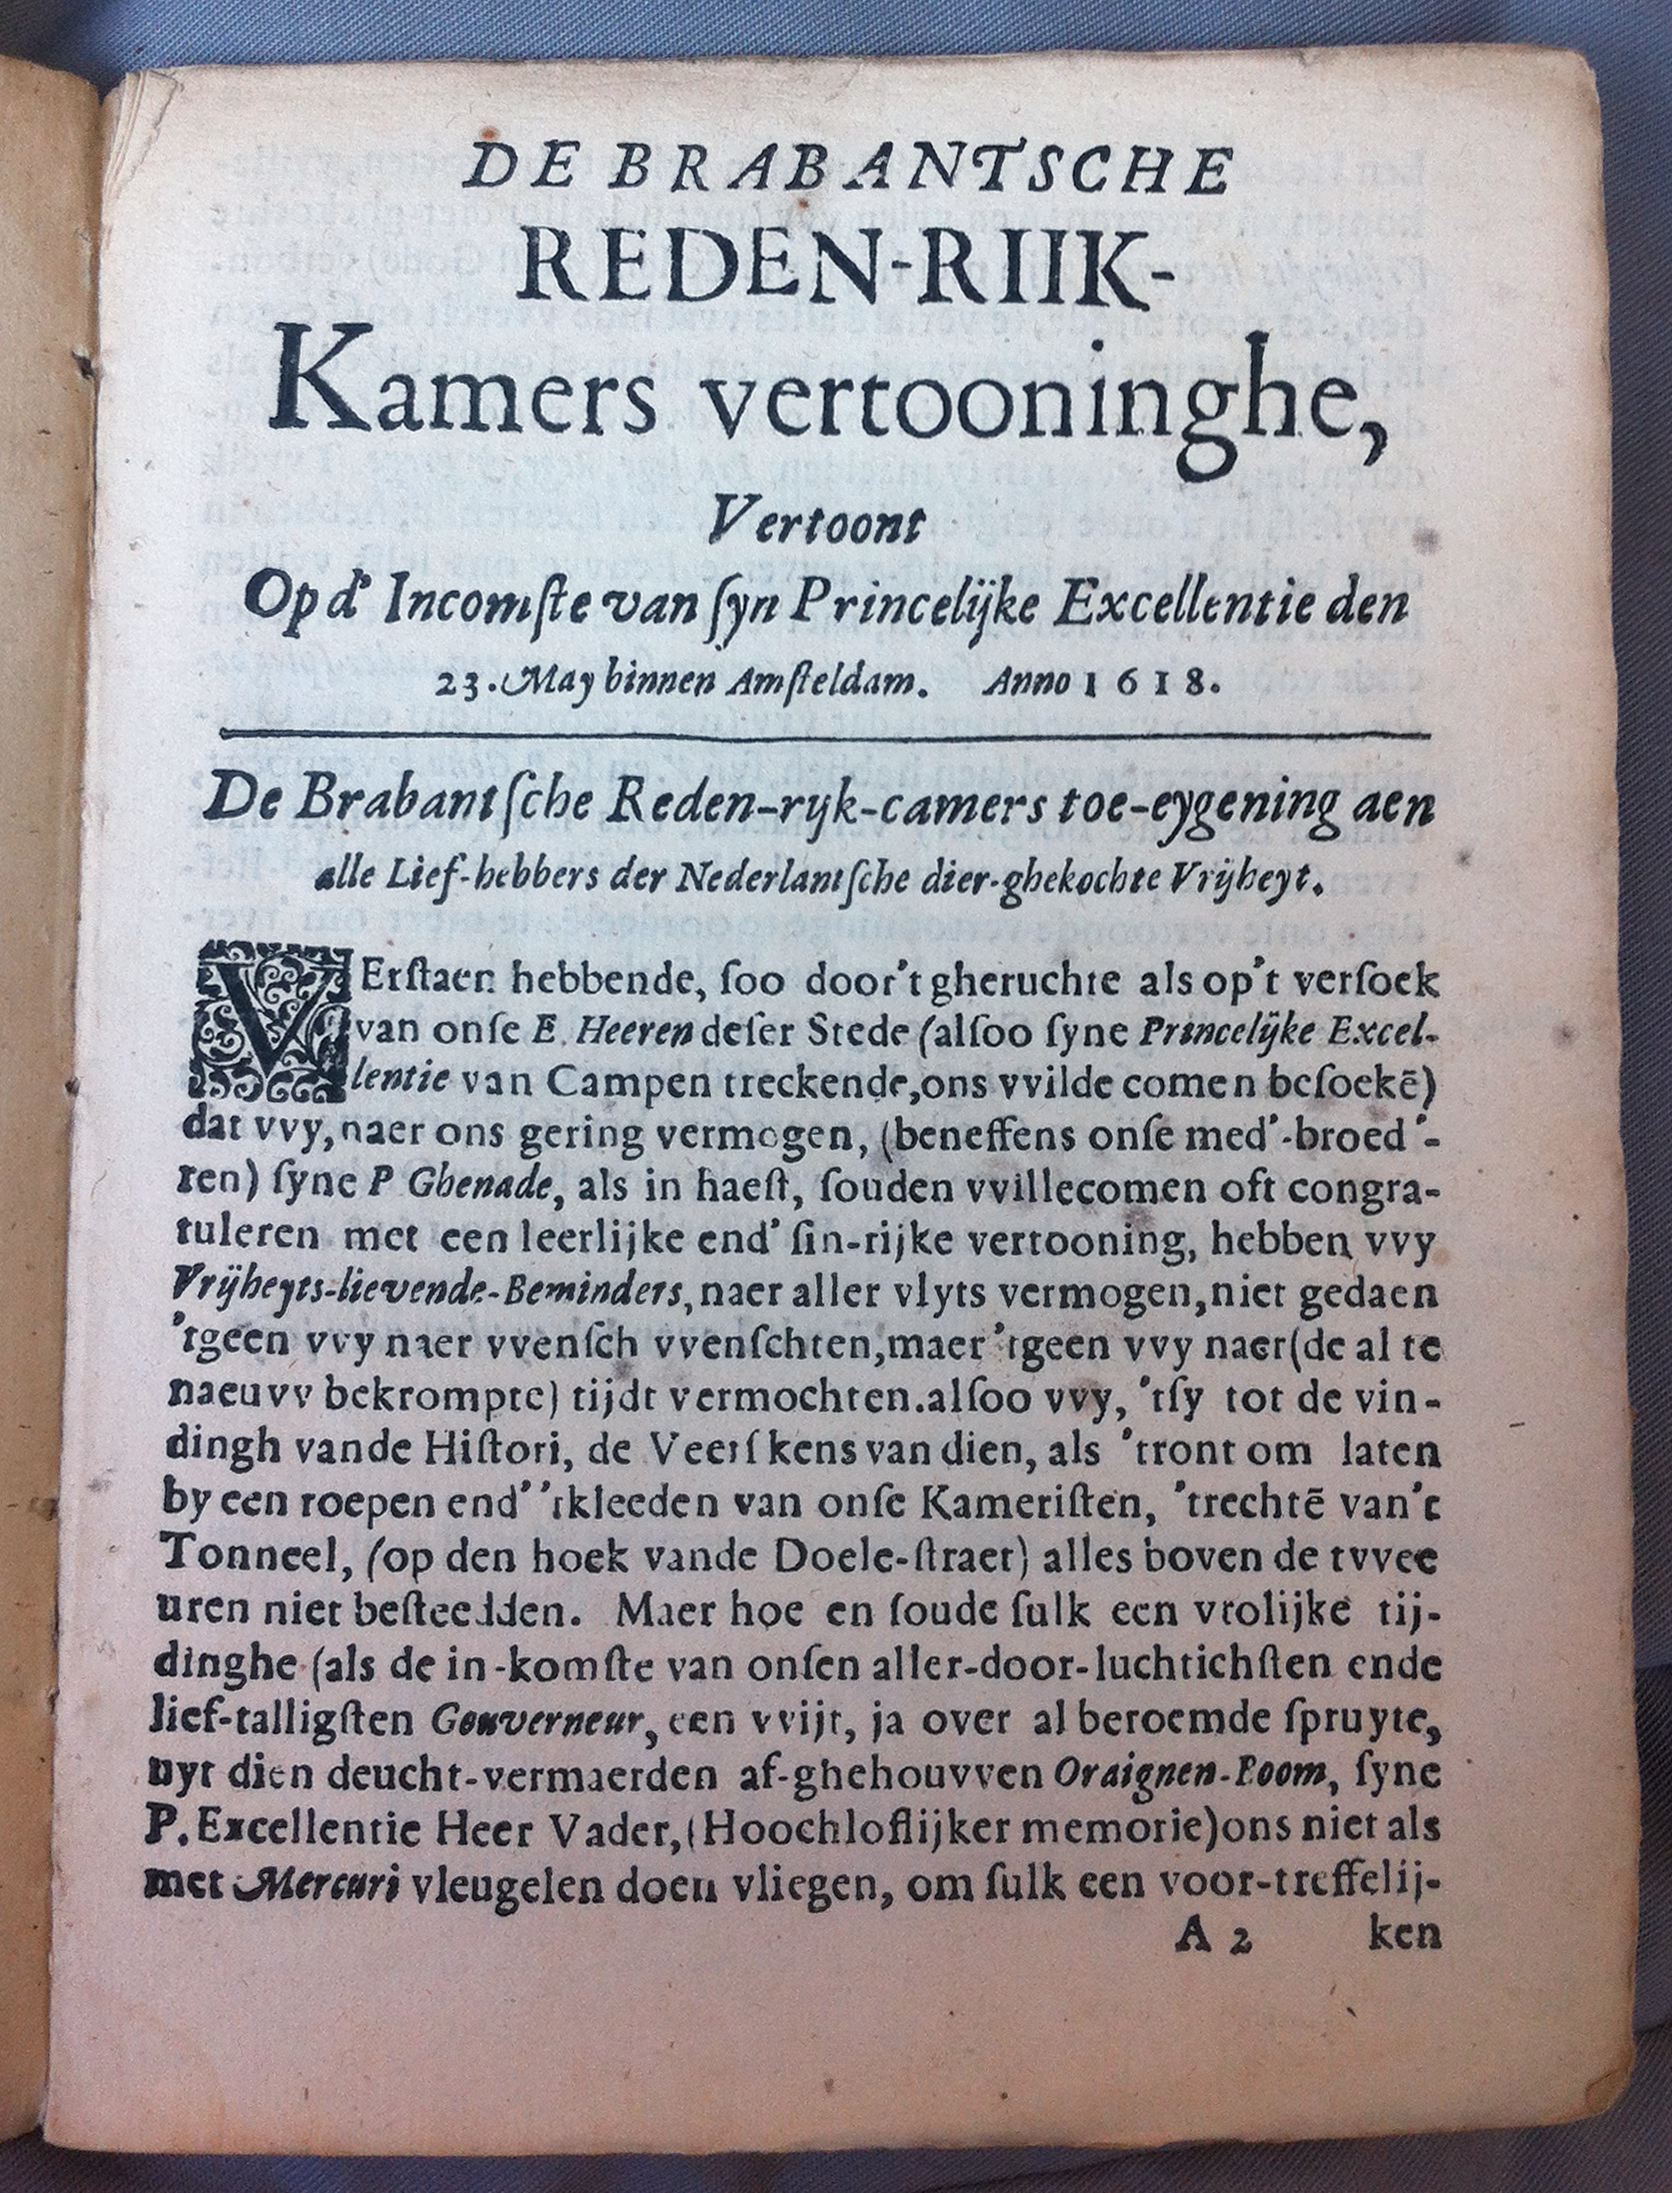 BrabantscheMaurits161803